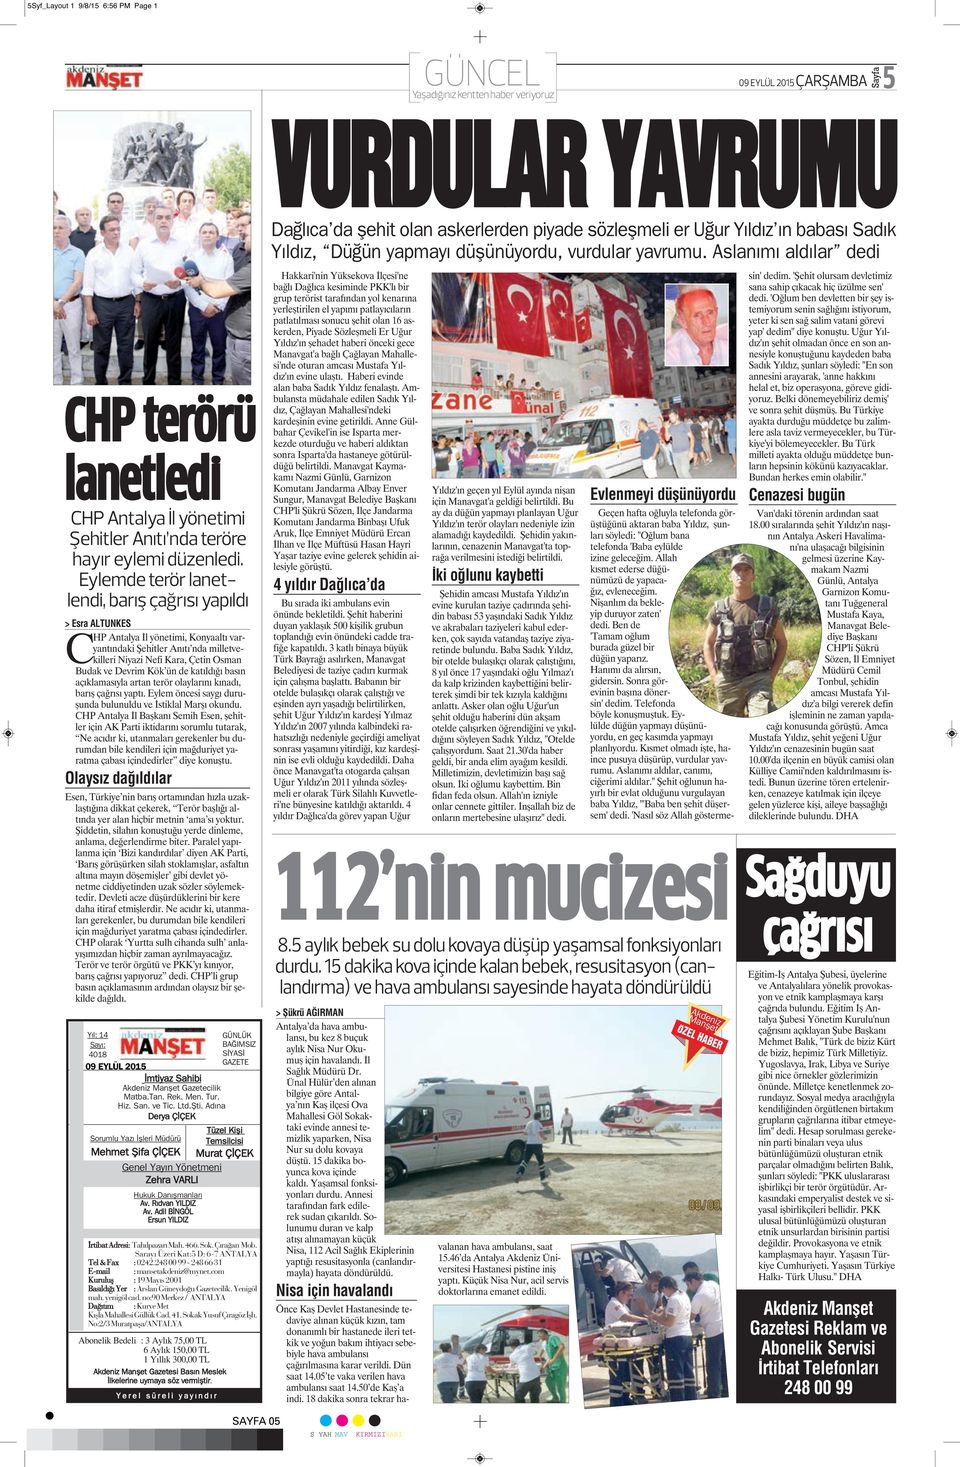 Eylemde terör lanetlendi, barış çağrısı yapıldı > Esra ALTUNKES CHP Antalya İl yönetimi, Konyaaltı varyantındaki Şehitler Anıtı nda milletvekilleri Niyazi Nefi Kara, Çetin Osman Budak ve Devrim Kök